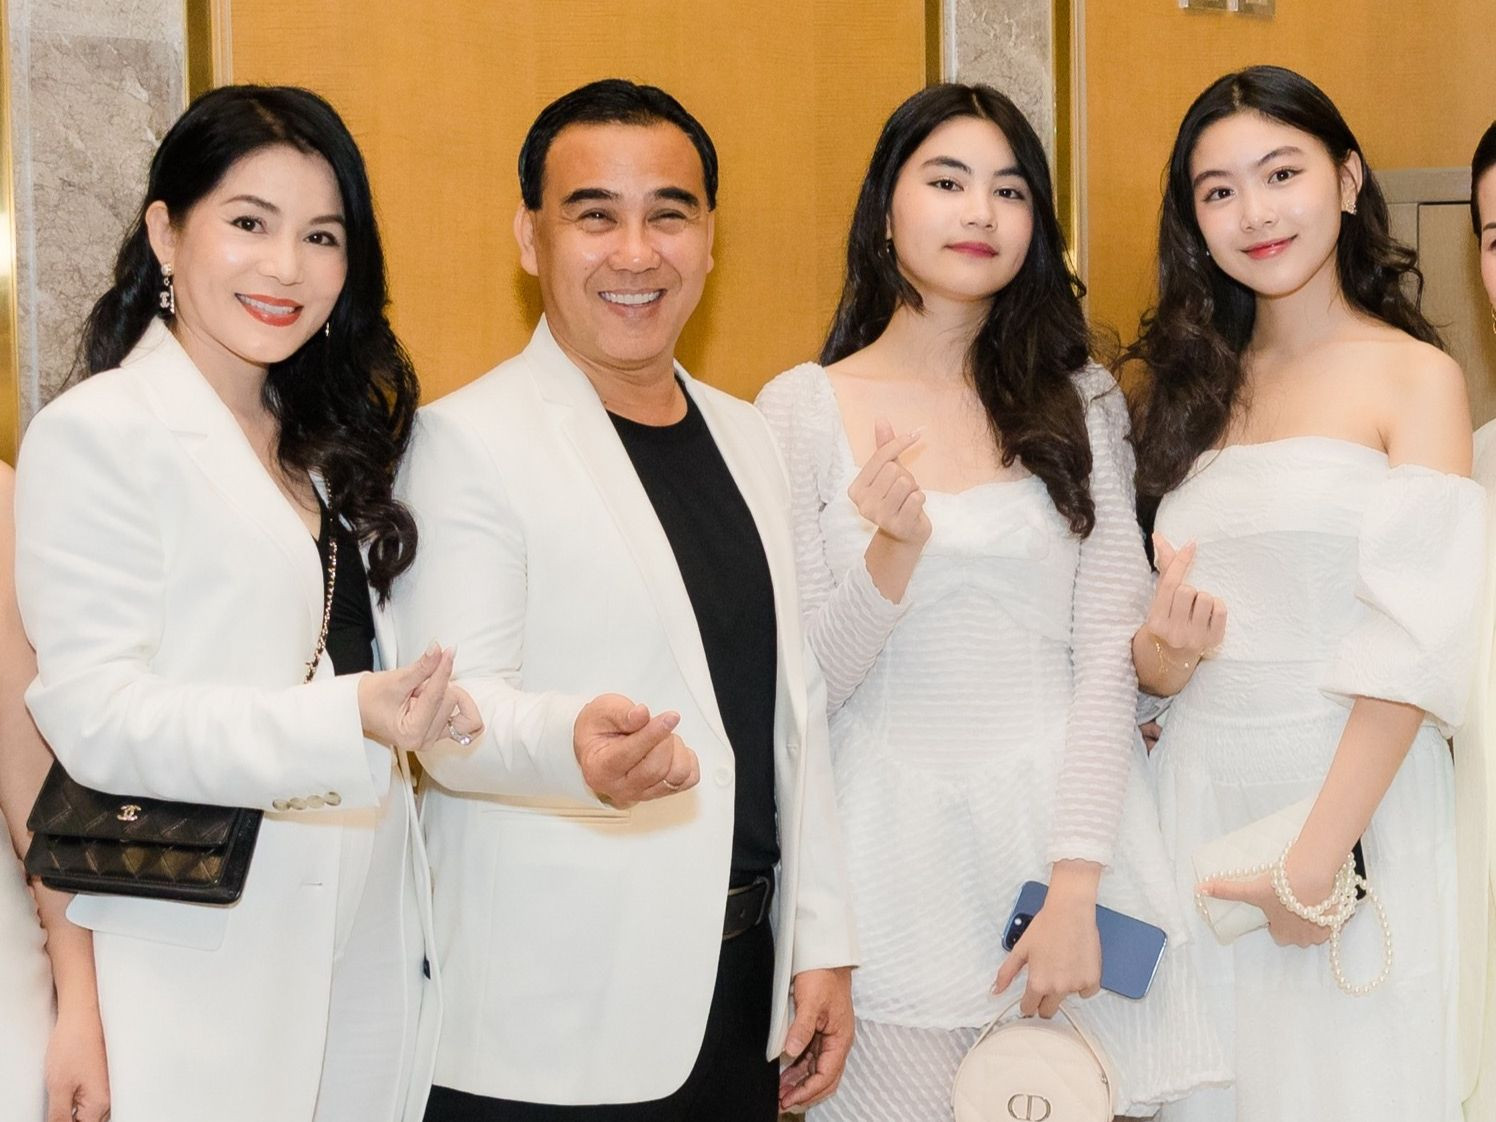 Quyền Linh còn khiến công chúng ngưỡng mộ khi có cuộc sống hạnh phúc bên vợ doanh nhân Dạ Thảo cùng 2 cô con gái xinh như Hoa hậu